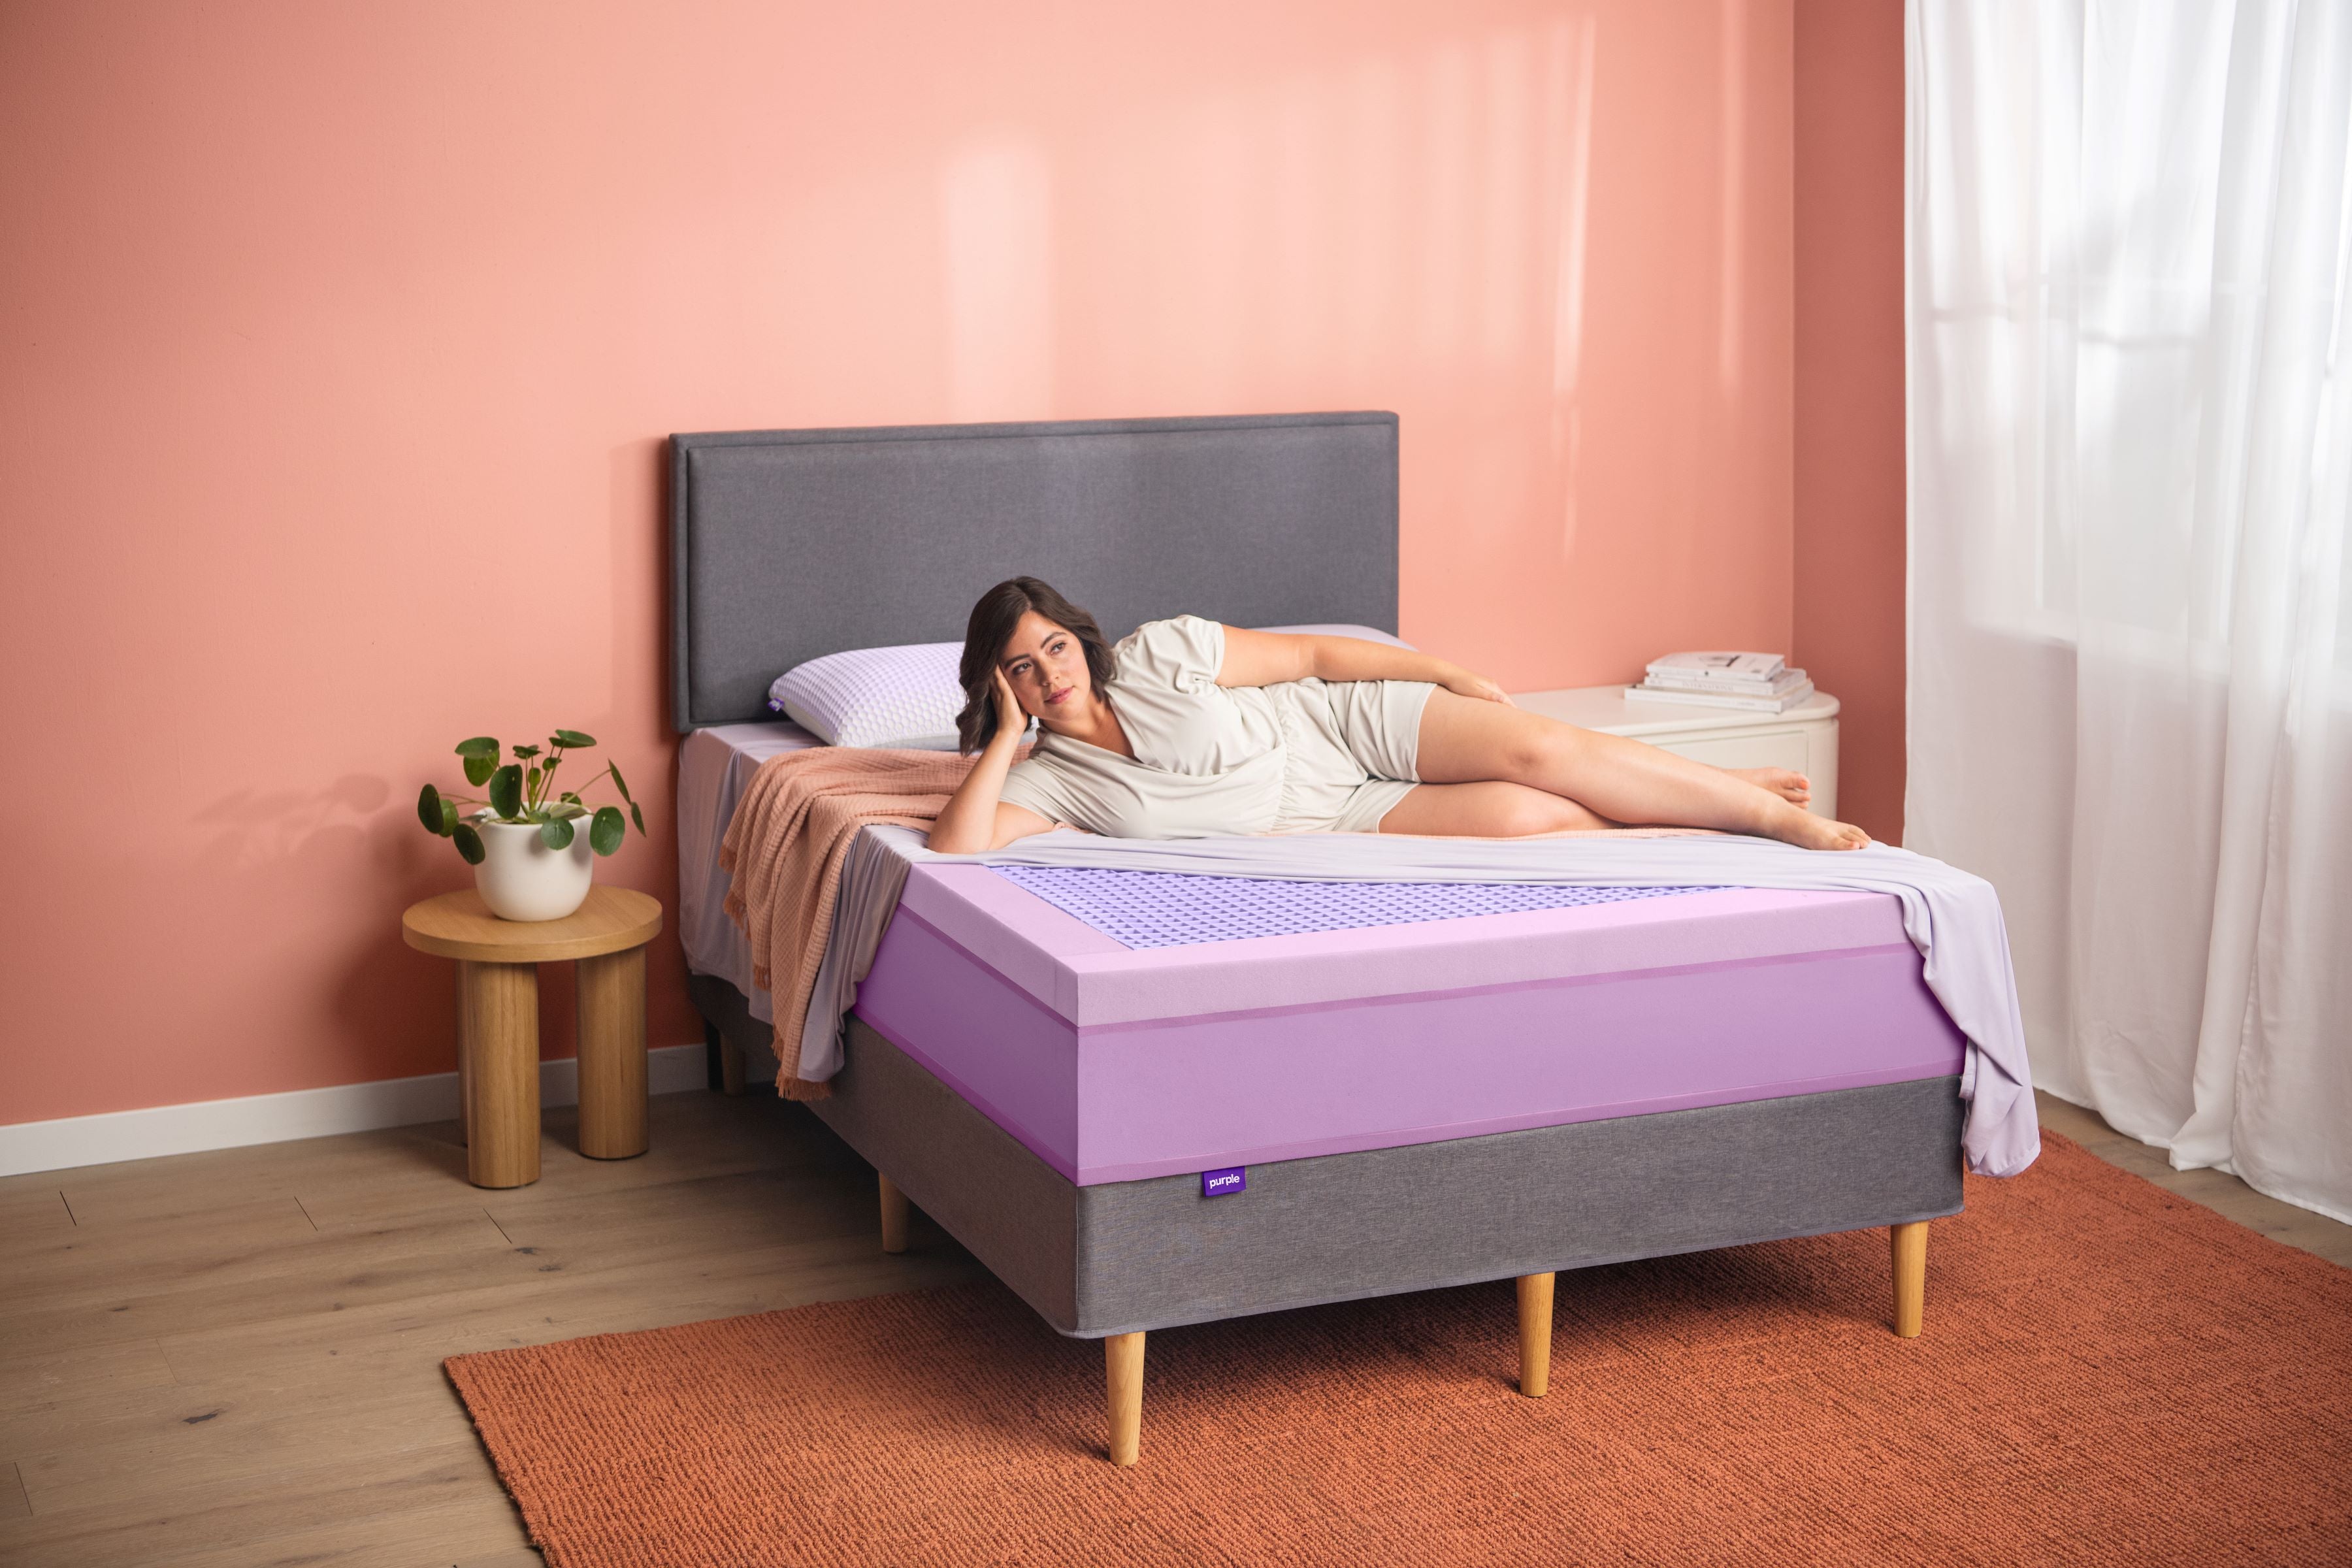 Woman lying on her side on a purple mattress